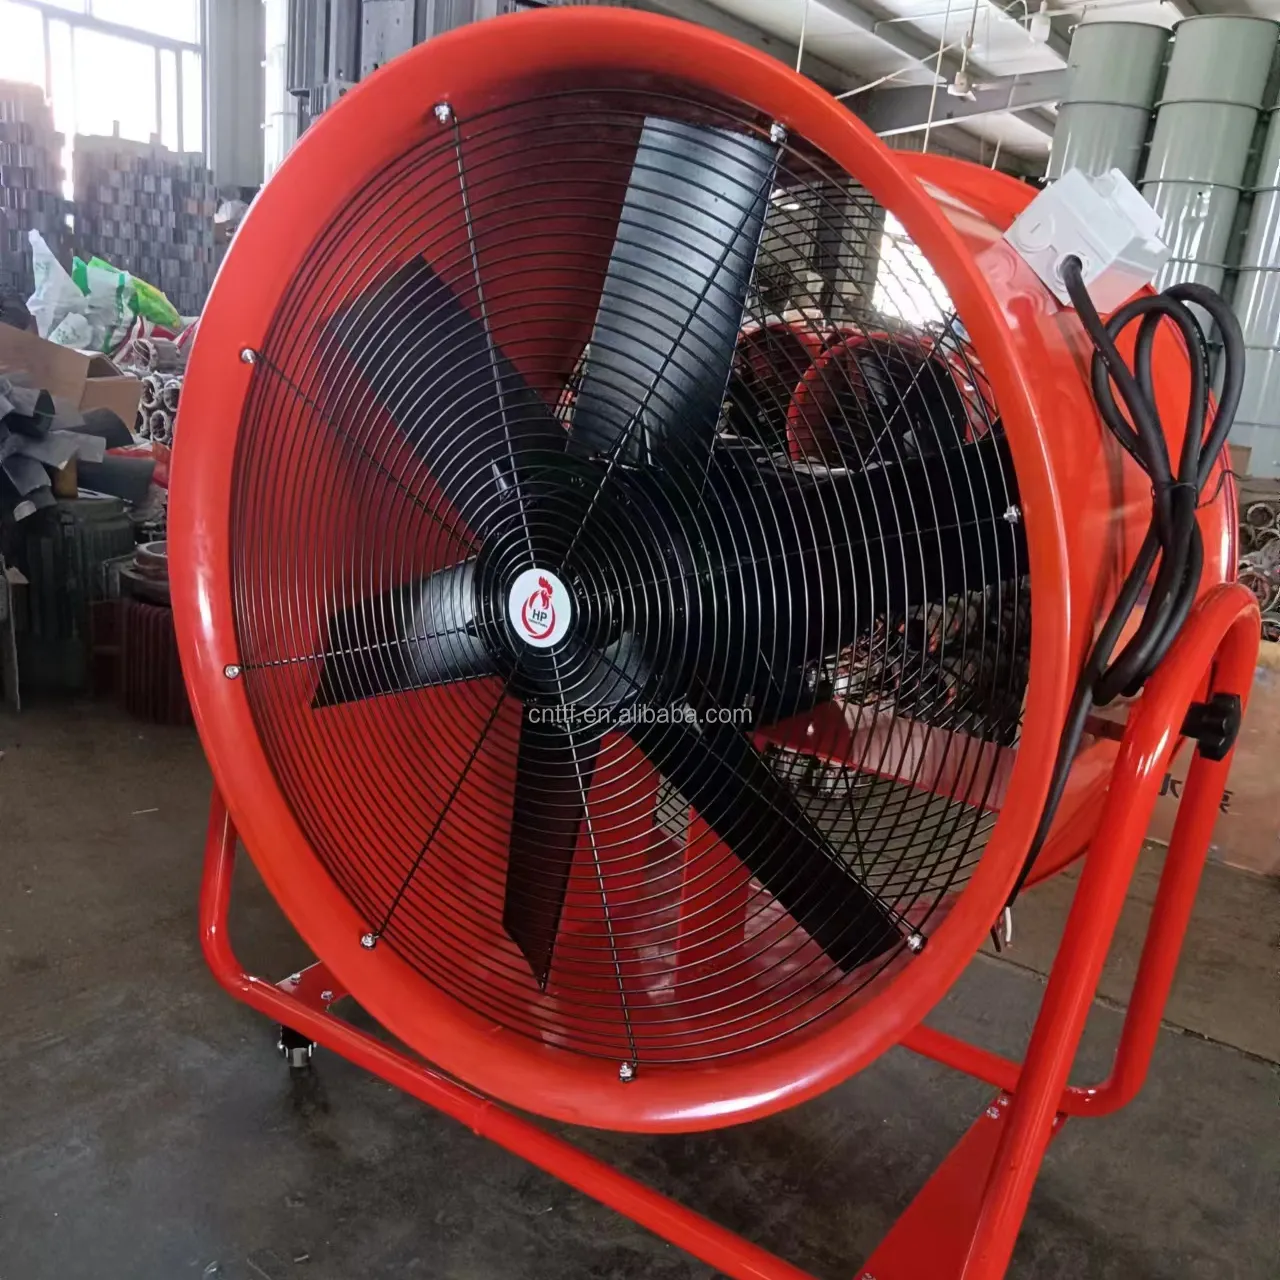 Ventilador de ventilação portátil e móvel, durável, 32 polegadas, 800mm de diâmetro e rodas móveis, comprimento de 5-10 metros